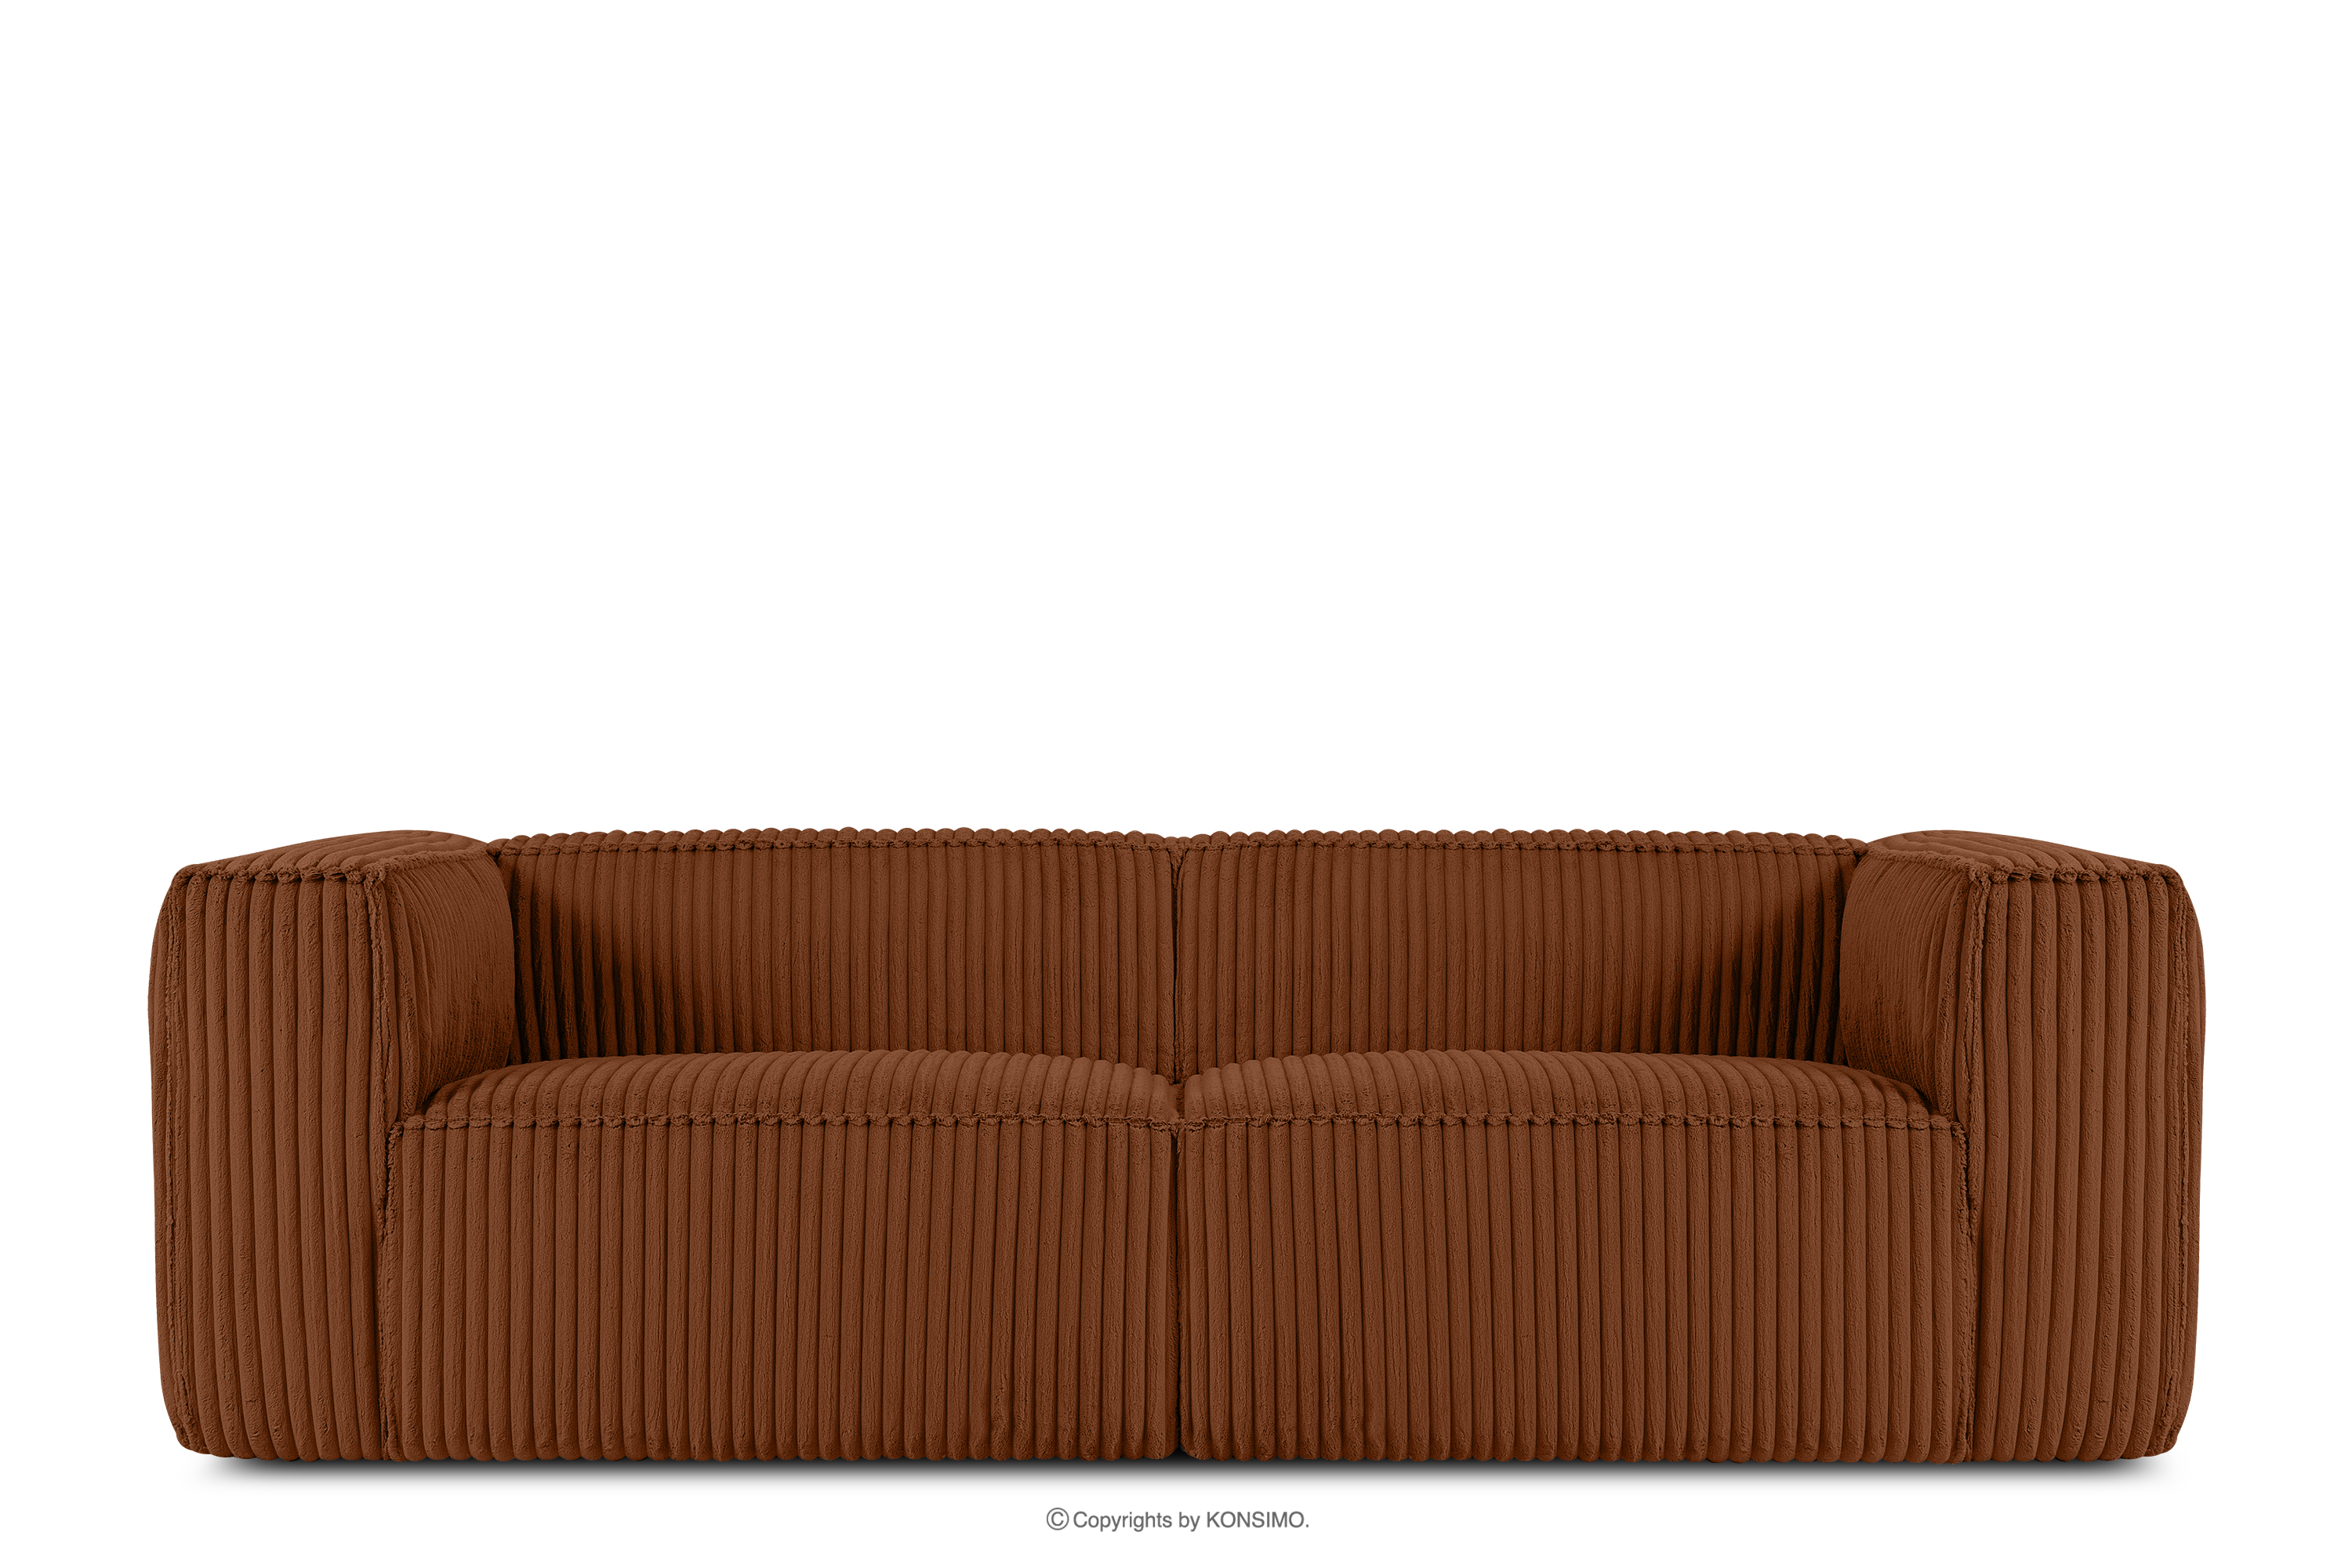 Duża ruda sofa w tkaninie sztruks